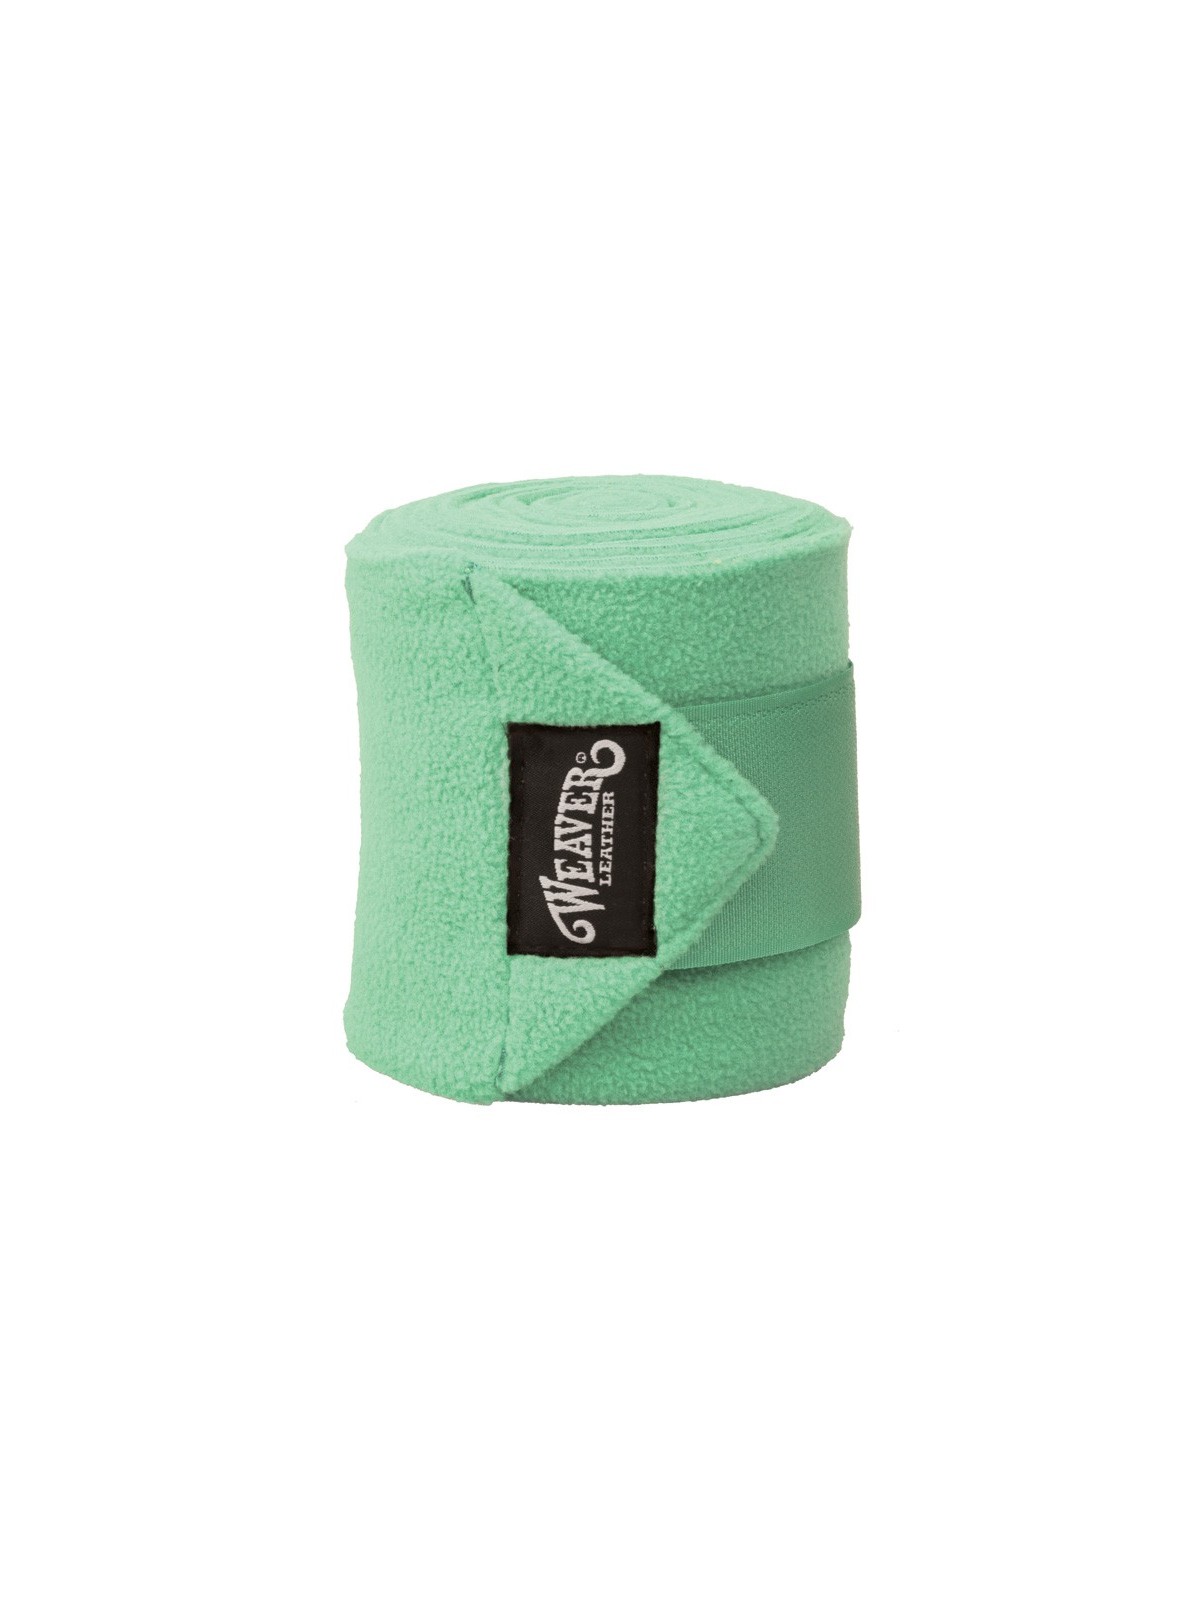 Polo Bandagen mint grün